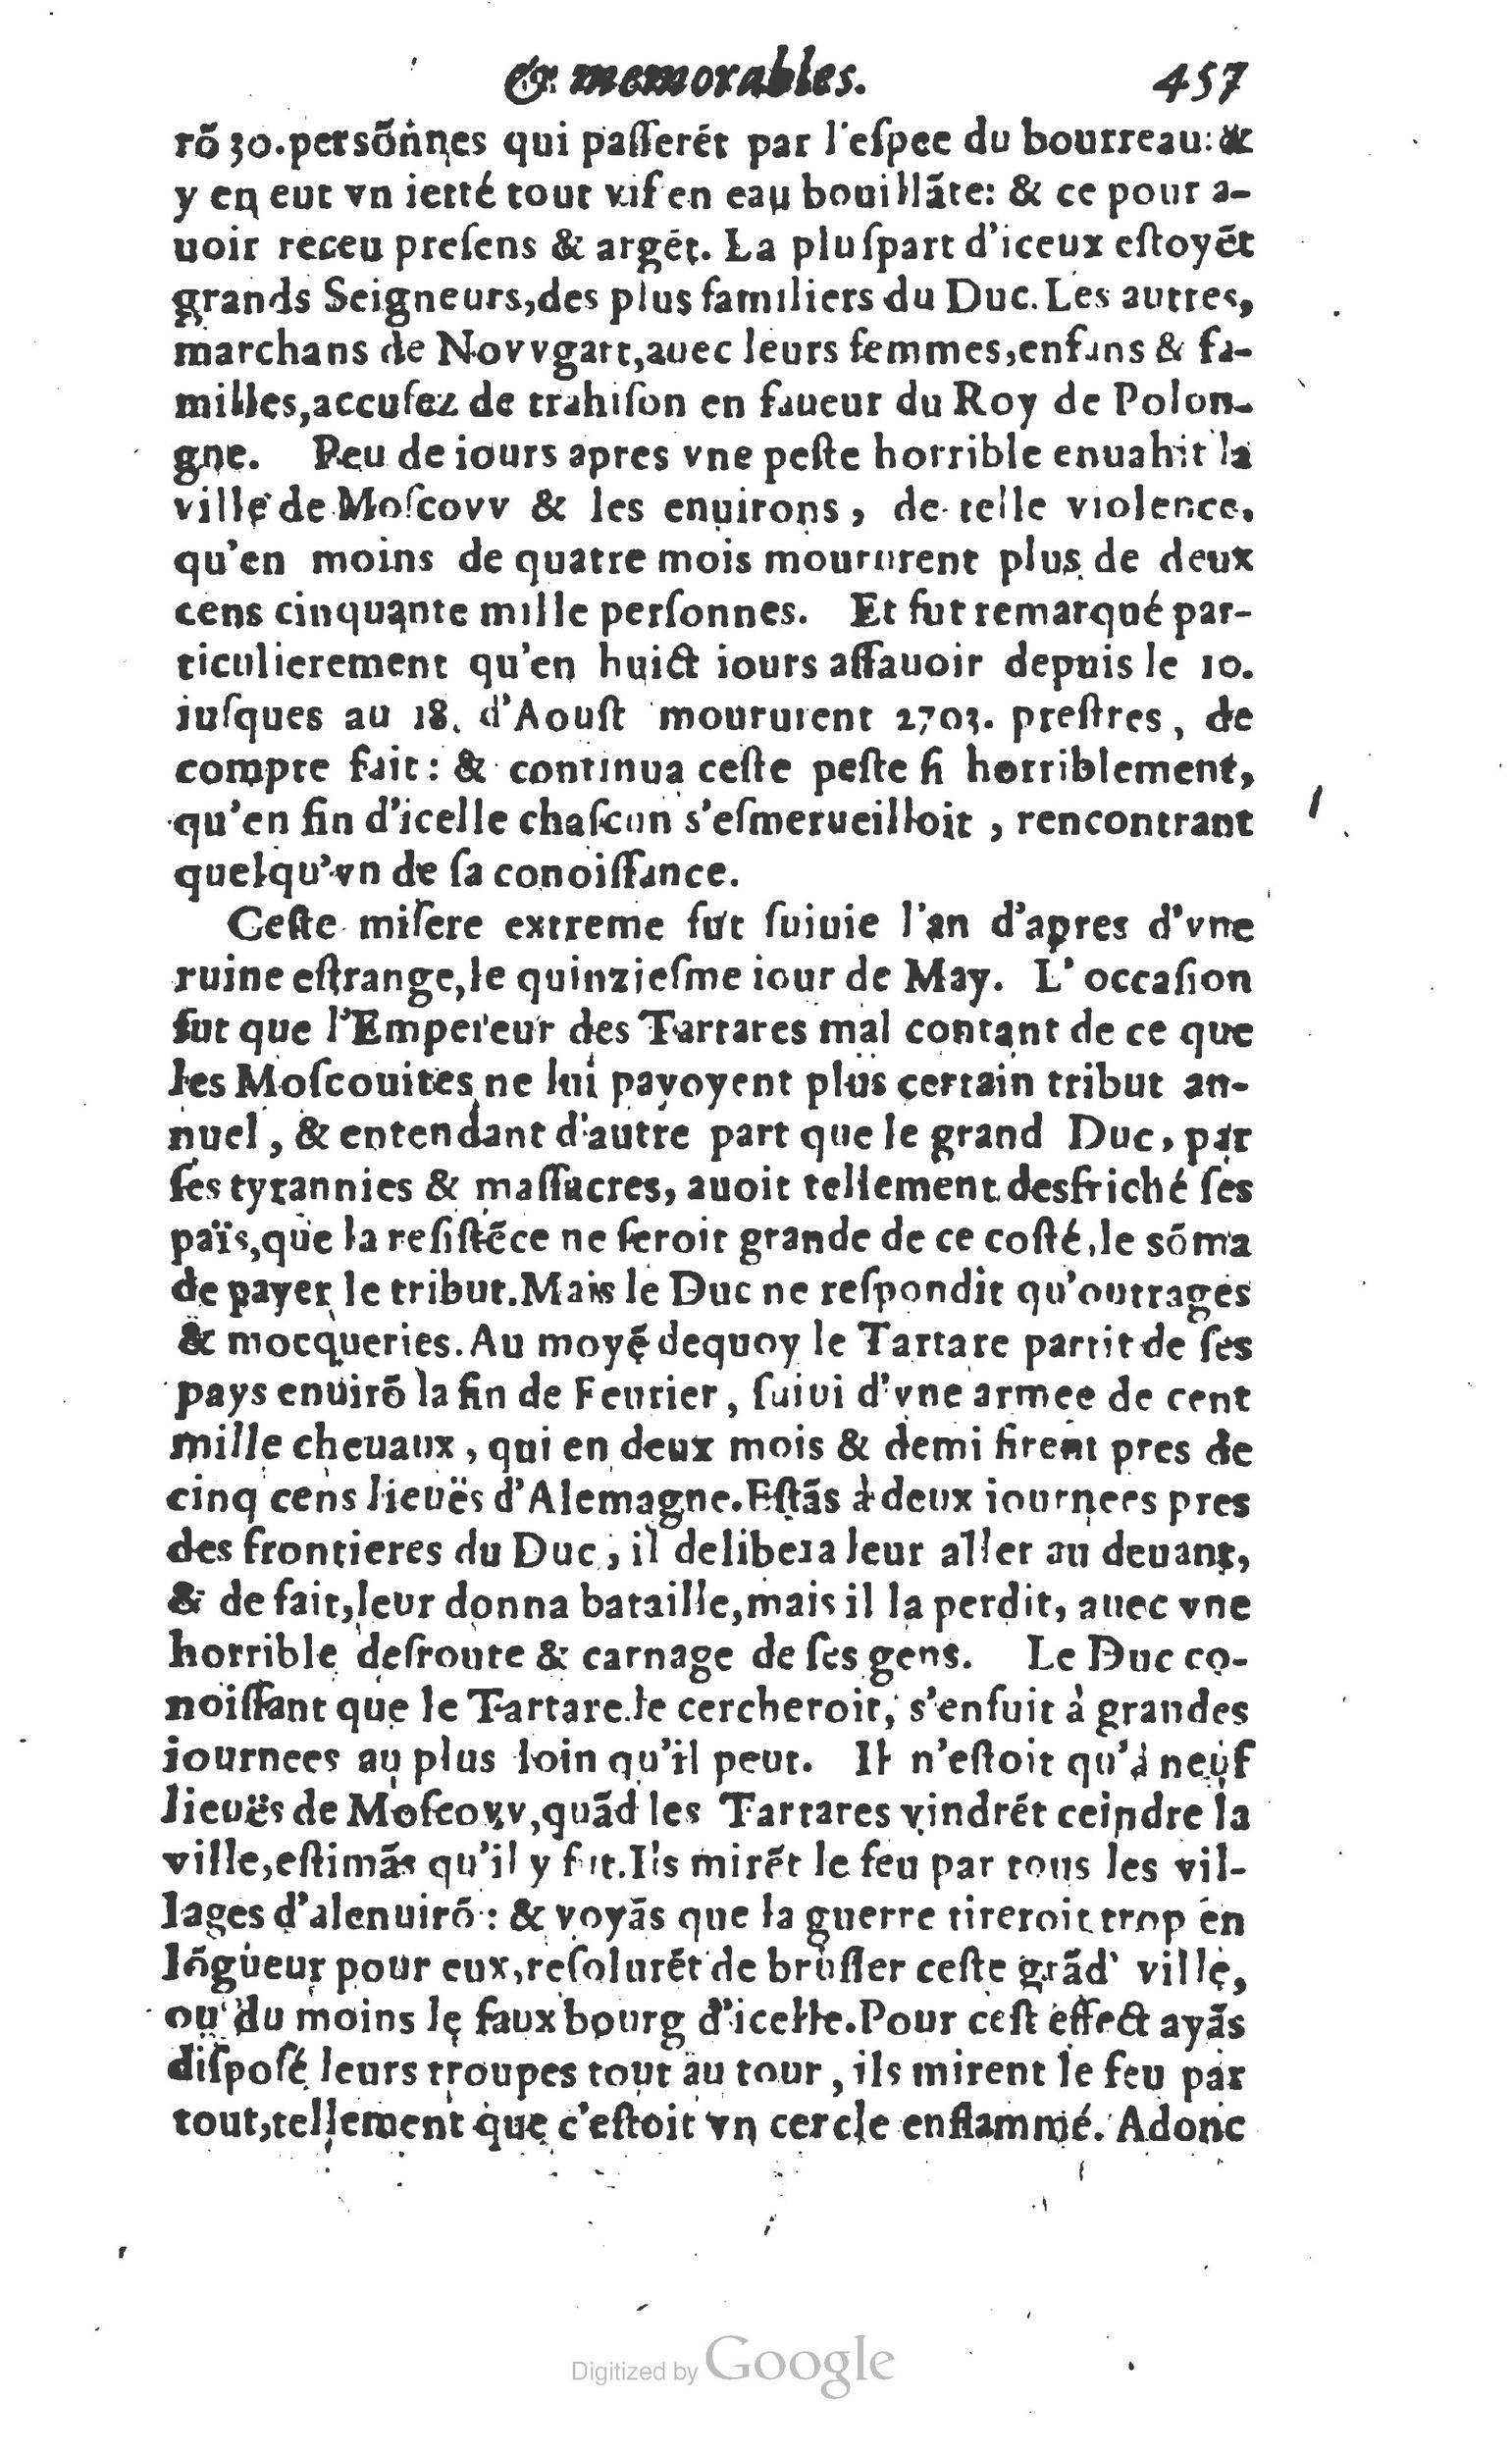 1610 Trésor d’histoires admirables et mémorables de nostre temps Marceau Princeton_Page_0478.jpg